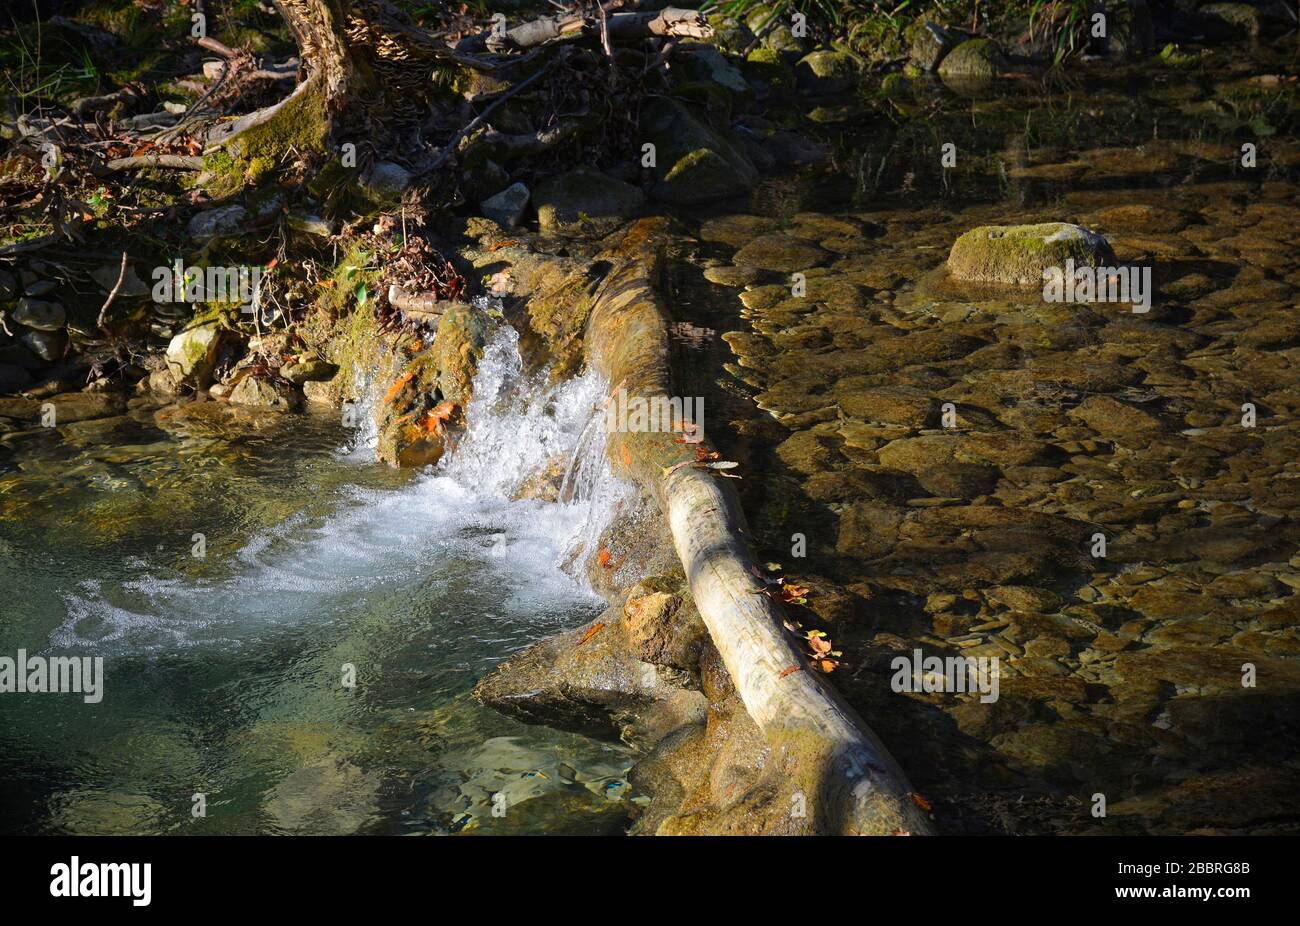 The Kozbanjscek river near Kozbana in Primorska, western Slovenia Stock Photo